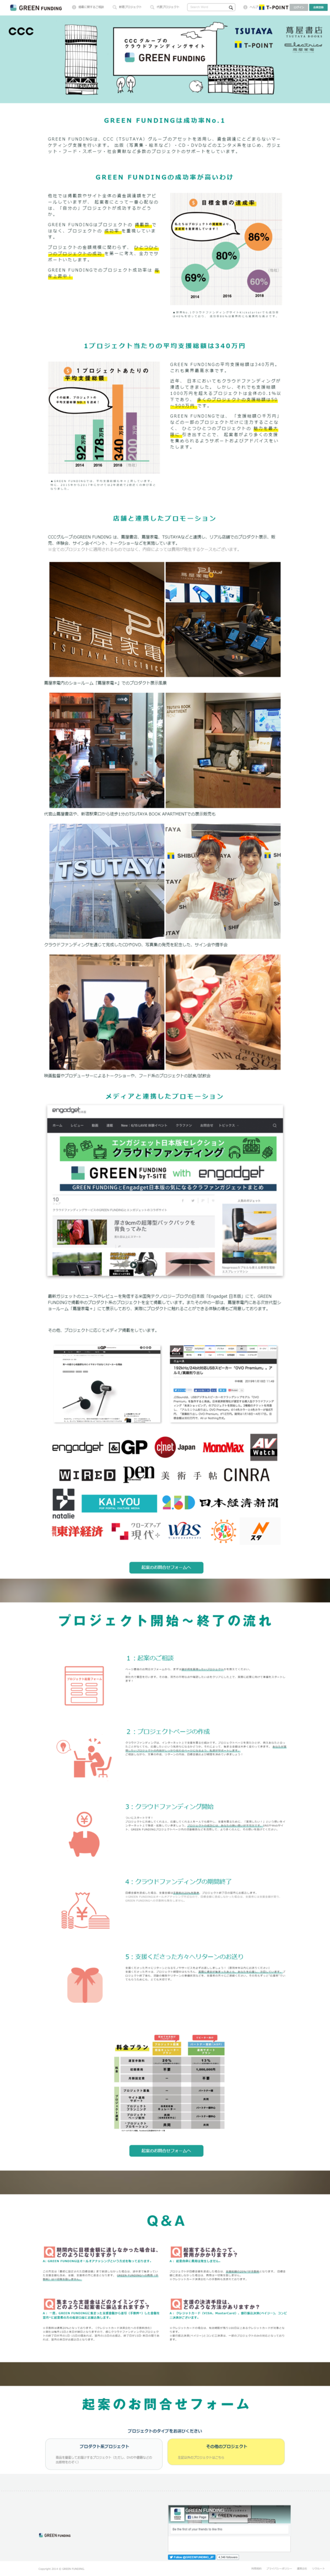 greenfunding.jp_portals_contact.png